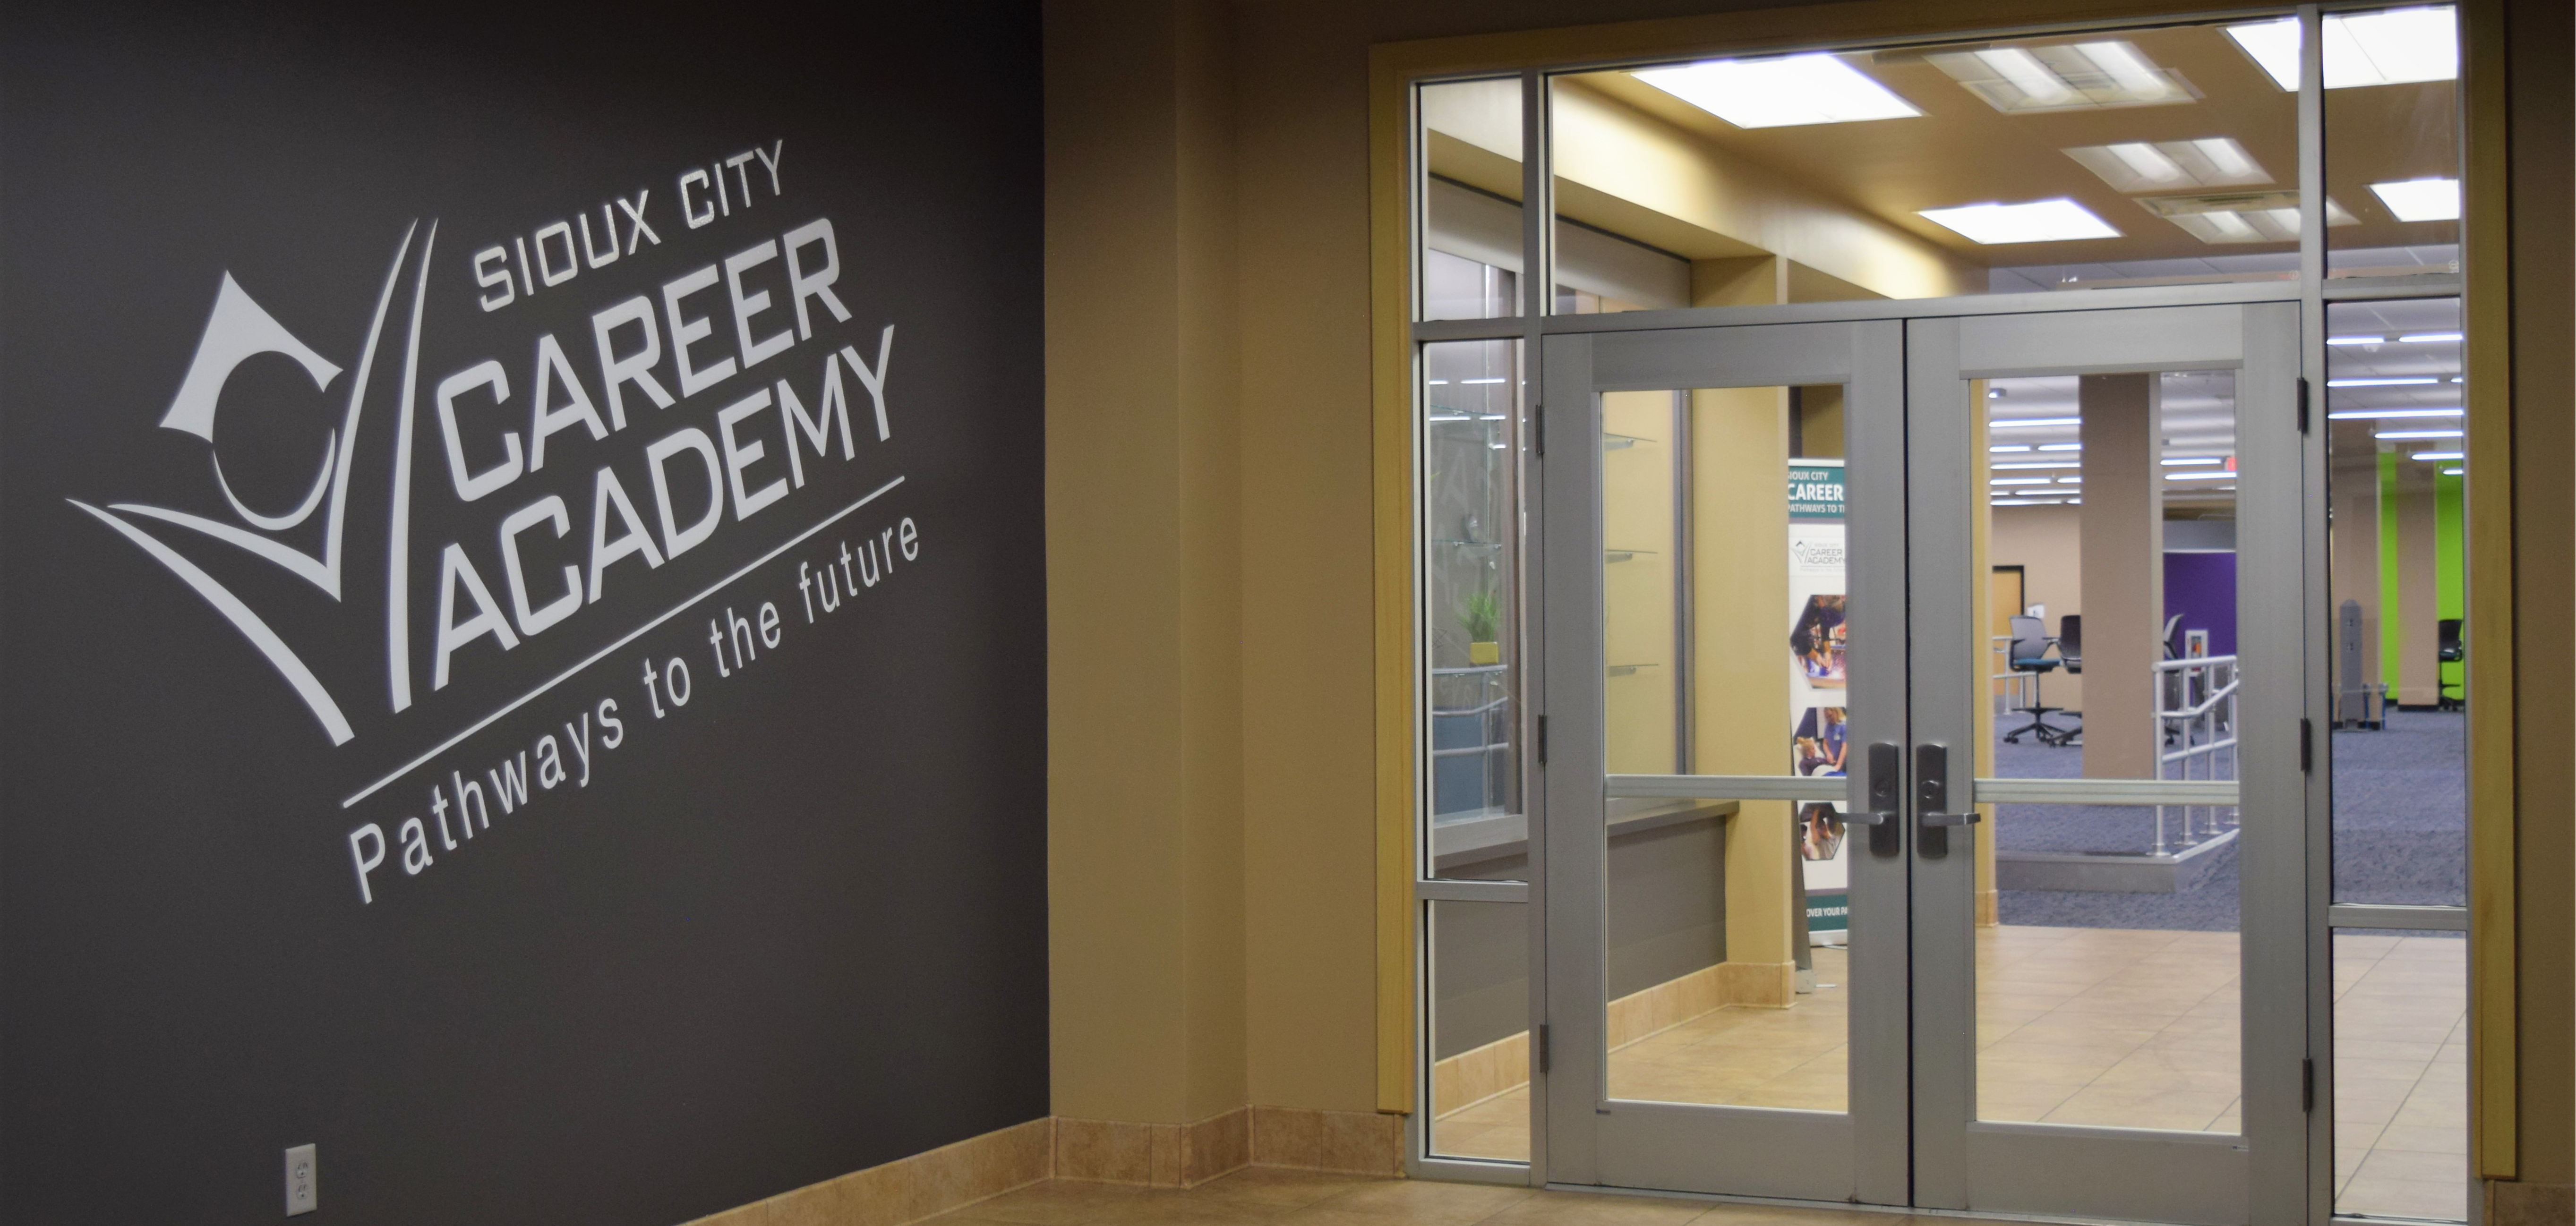 Entrance hallway to Sioux City Career Academy